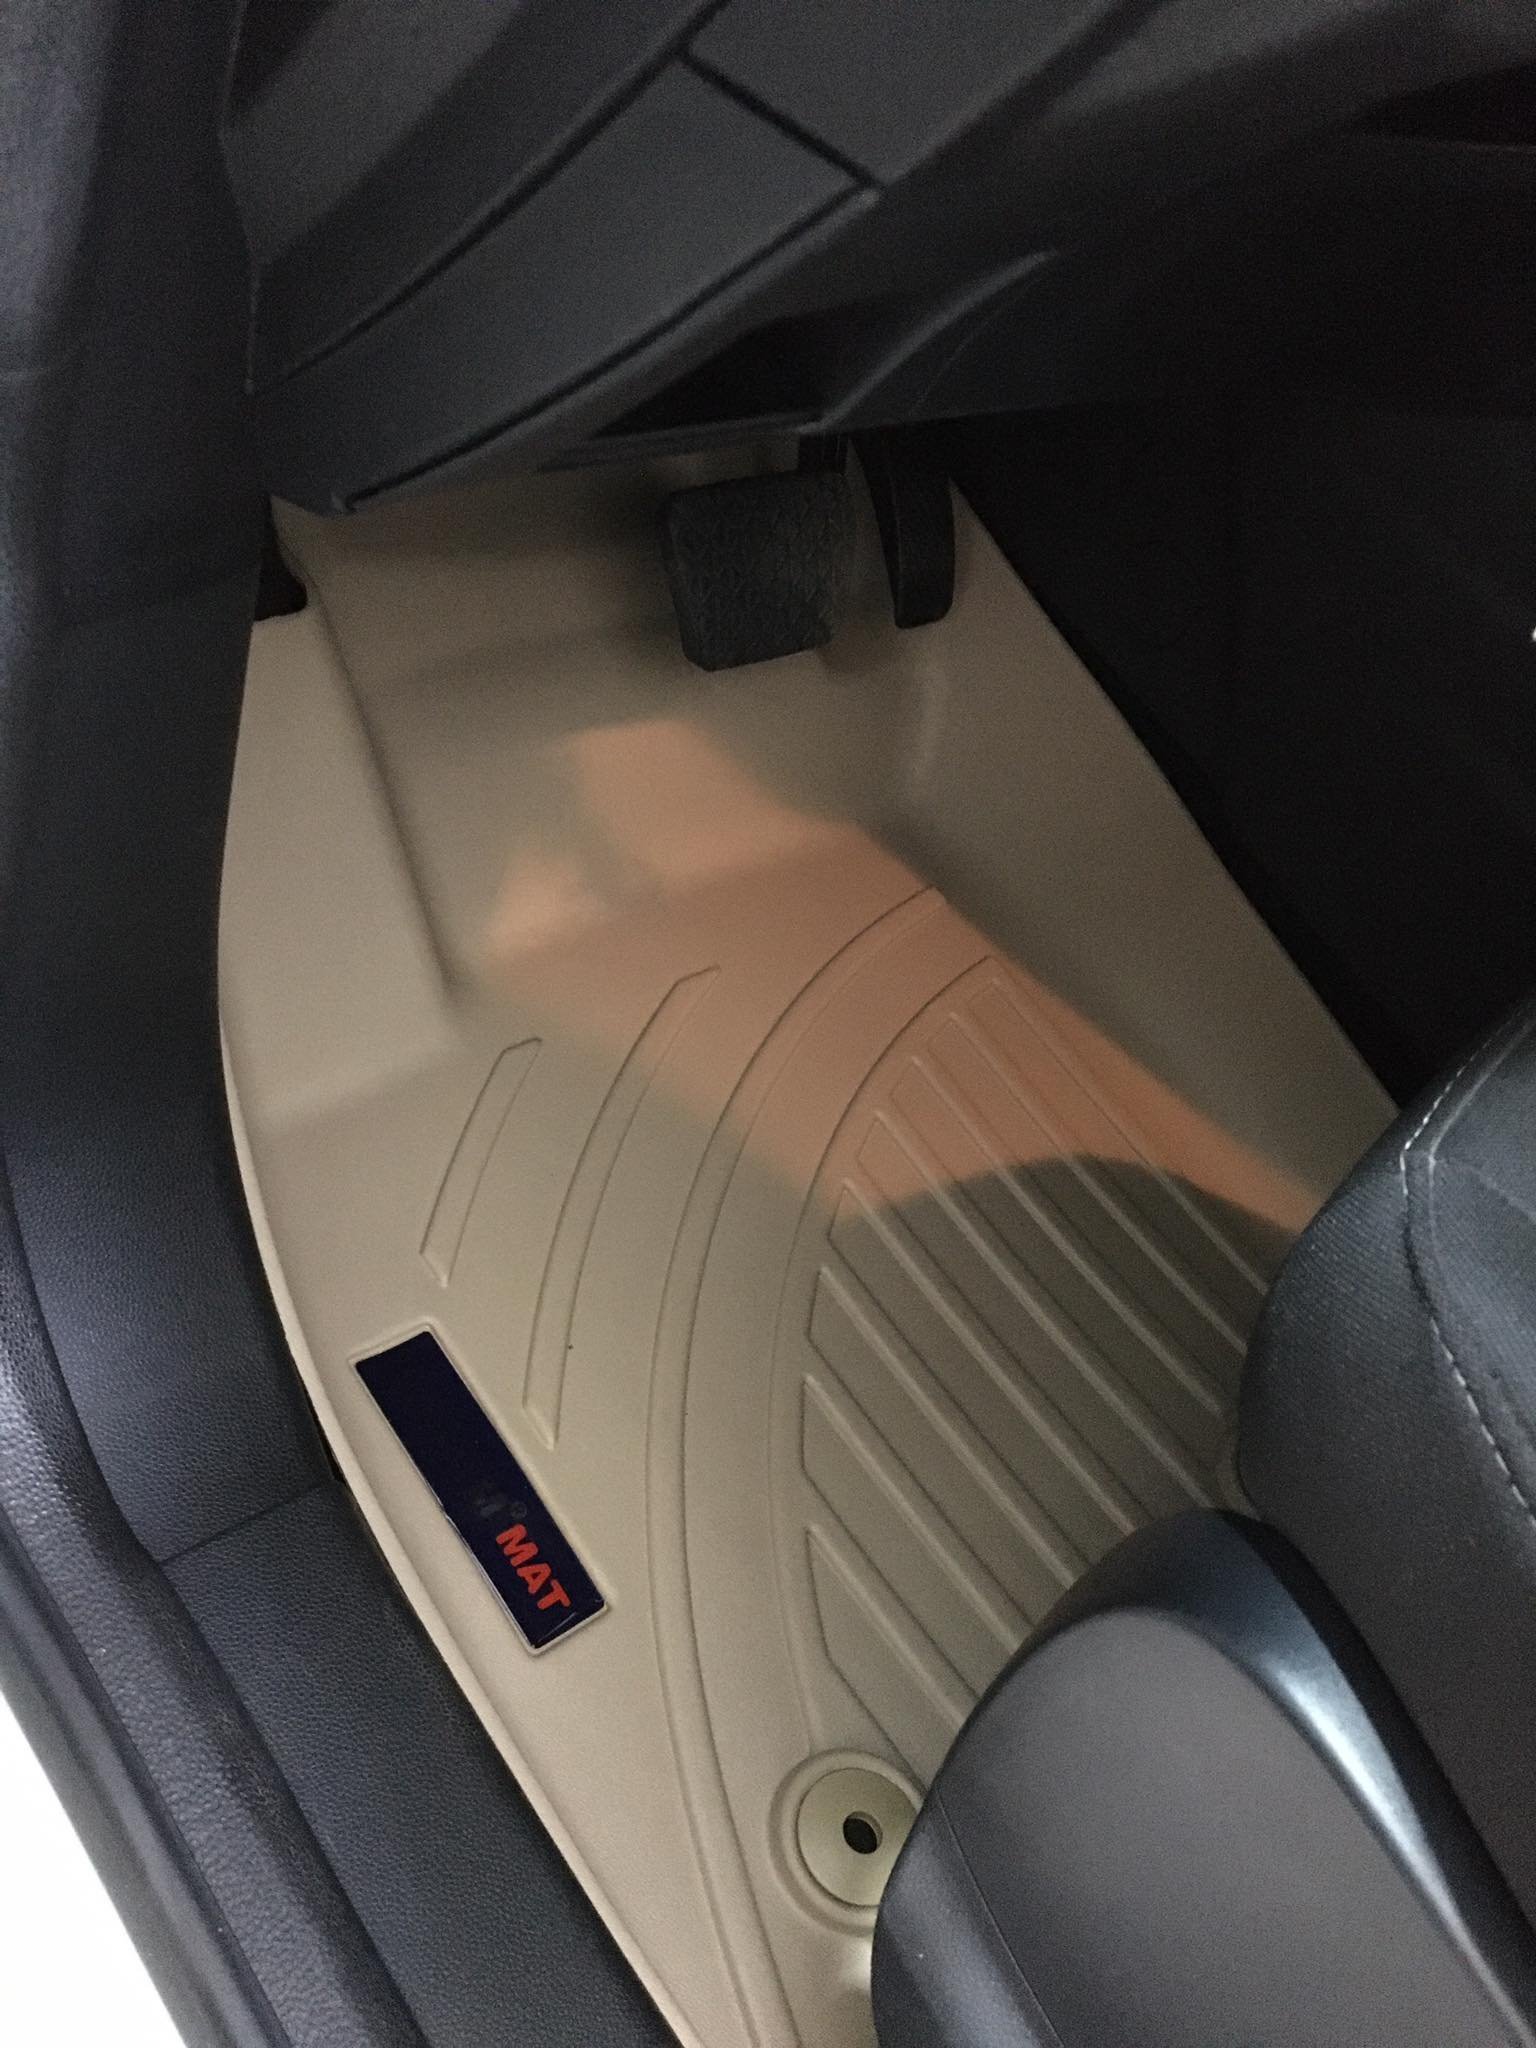 Thảm lót sàn xe ô tô Ford ecosport 2012-2021 Nhãn hiệu Macsim chất liệu nhựa TPV cao cấp màu đen-màu be